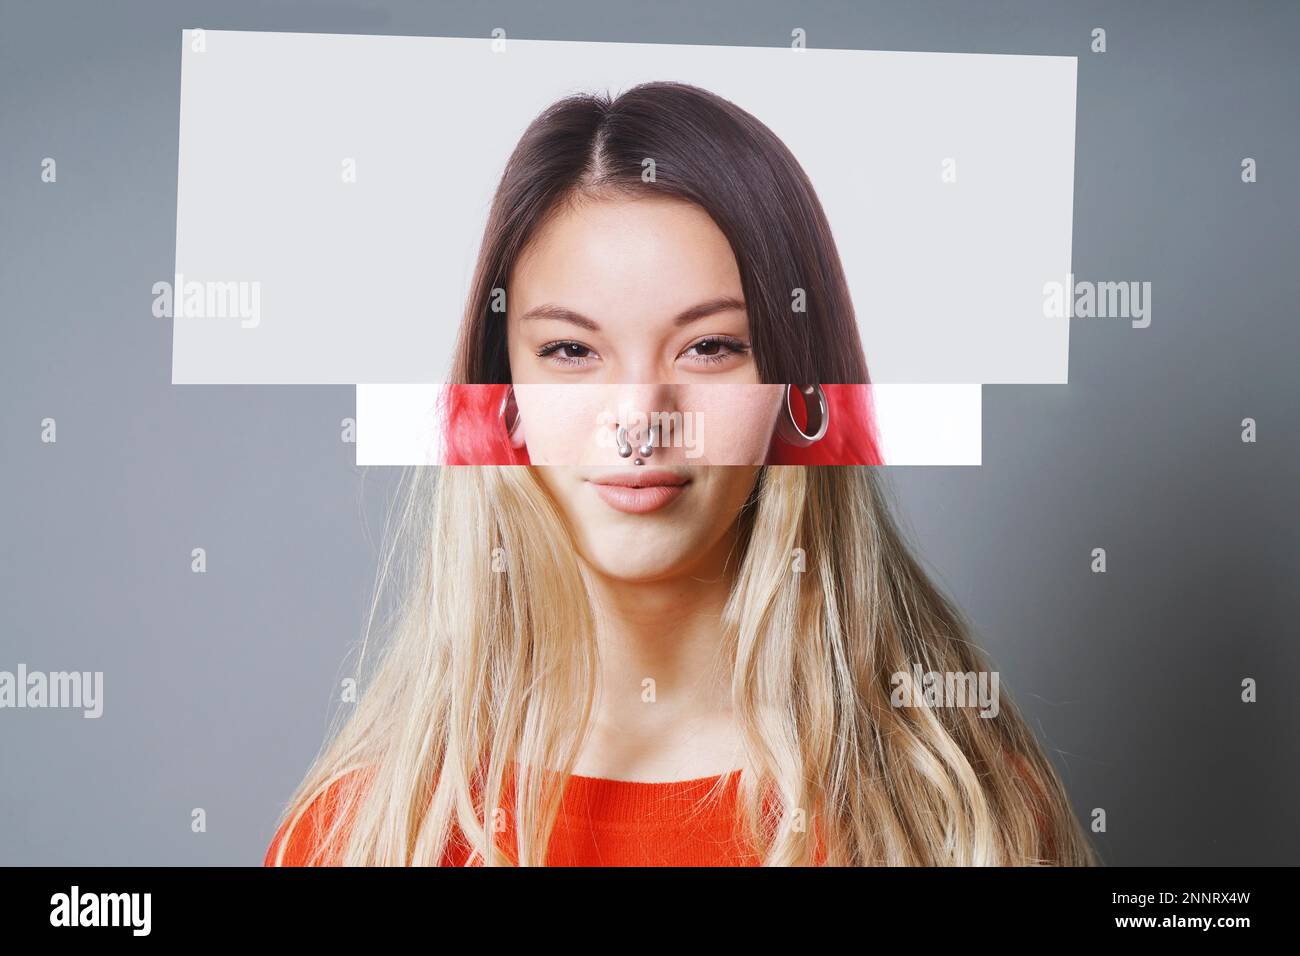 Digitale Collage von drei verschiedenen jungen Frauen asiatischer und europäischer Abstammung - Diversitätskonzept Stockfoto